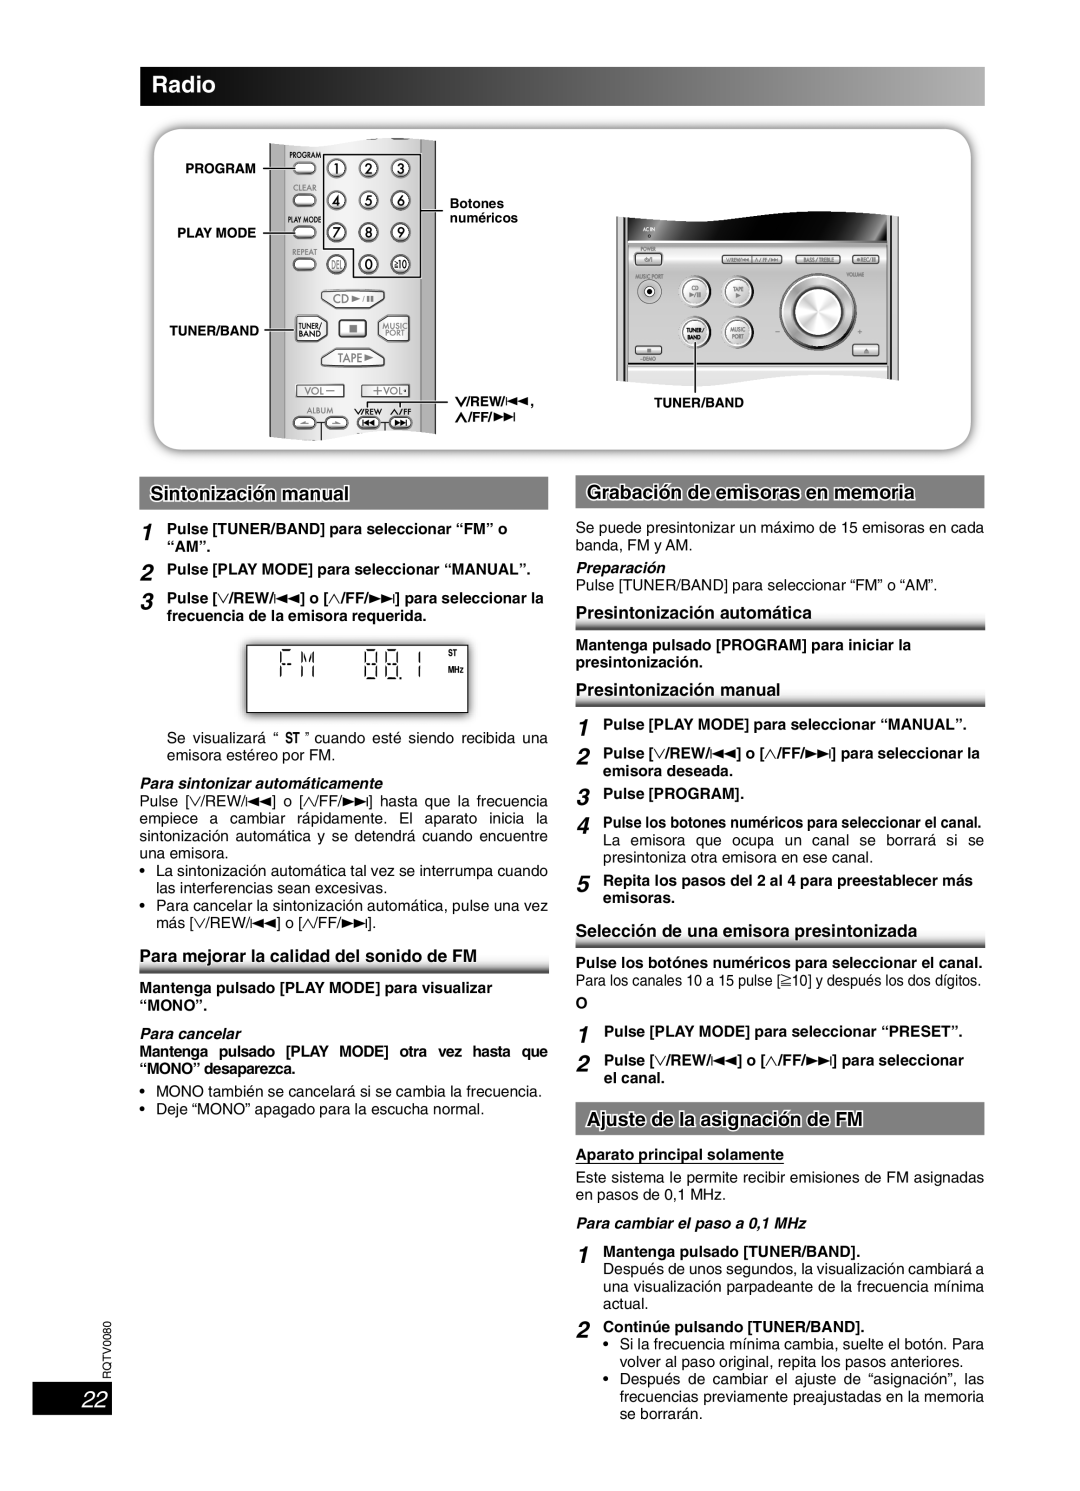 Panasonic SC-PM23 Sintonización manual, Grabación de emisoras en memoria, Ajuste de la asignación de FM, Para cancelar 